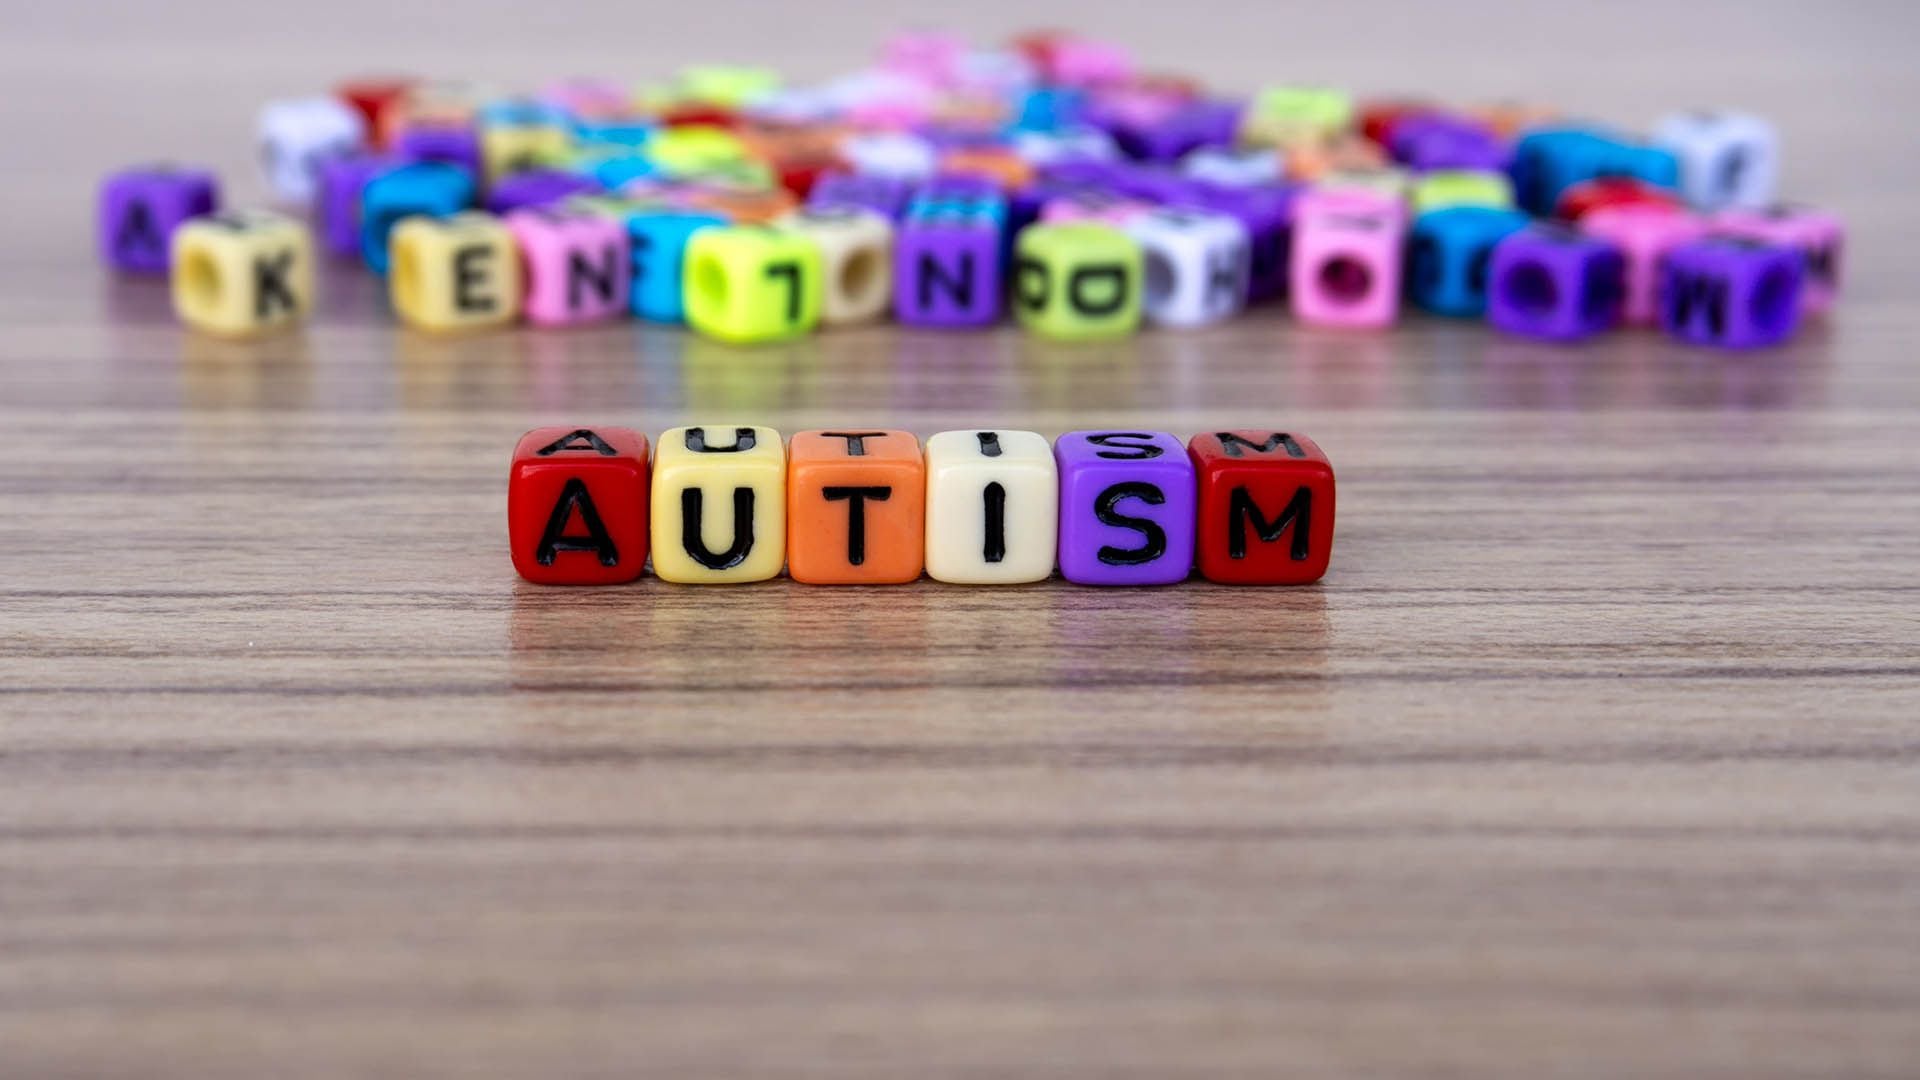 Se utiliza el término “espectro” para describir el autismo porque existe una amplia variación en el tipo y la gravedad de los síntomas que tienen las personas con esos trastornos